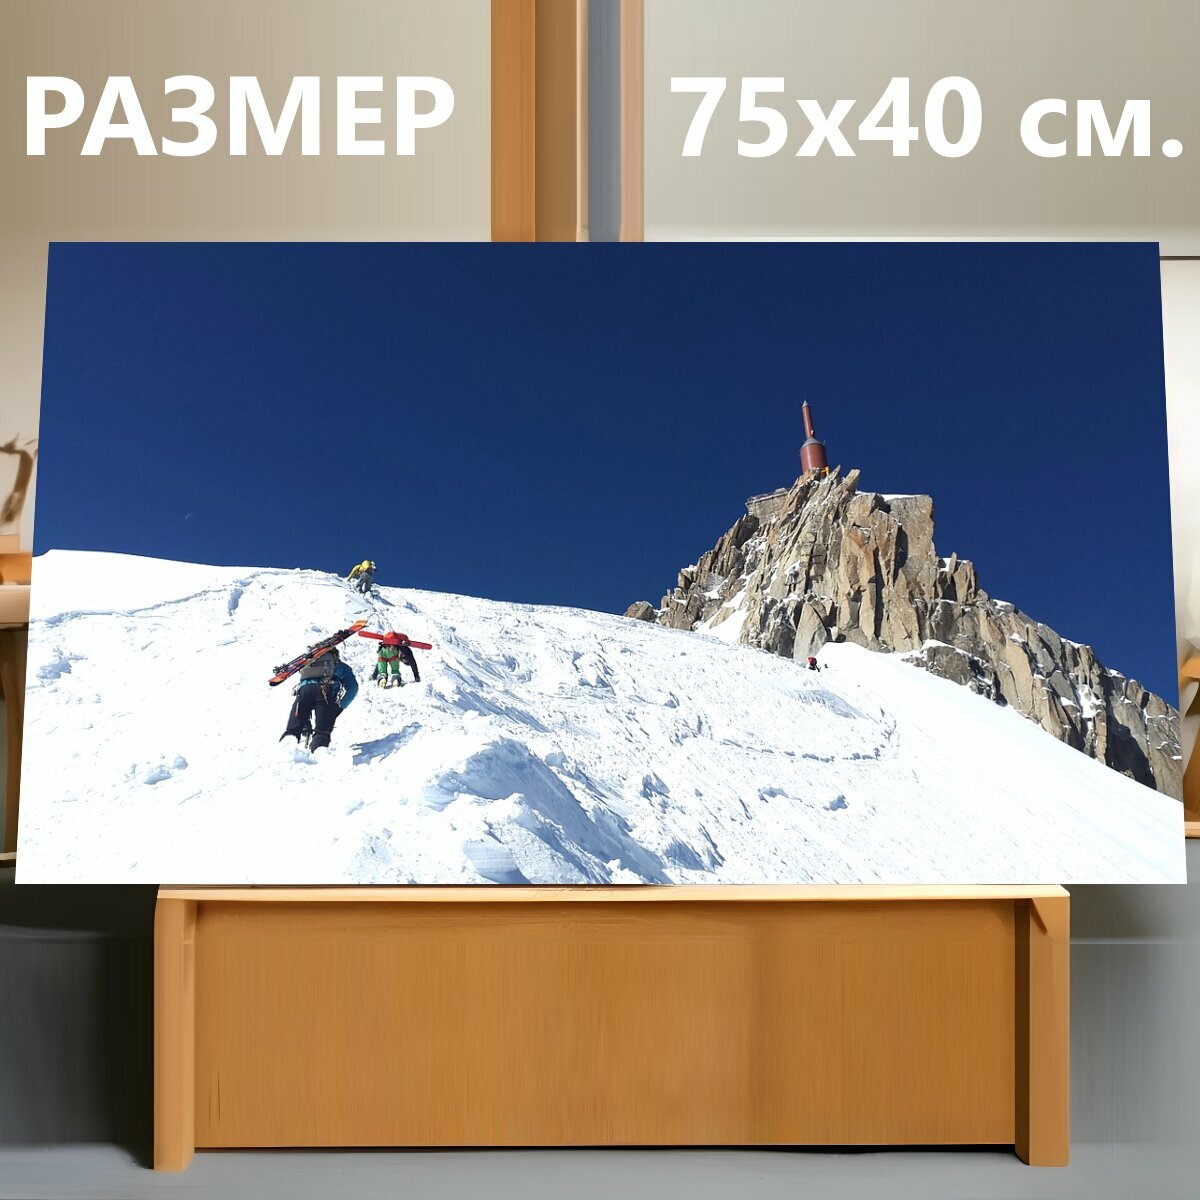 Картина на холсте "Эгюий дю миди, альпинист, бэккантри лыжно" на подрамнике 75х40 см. для интерьера